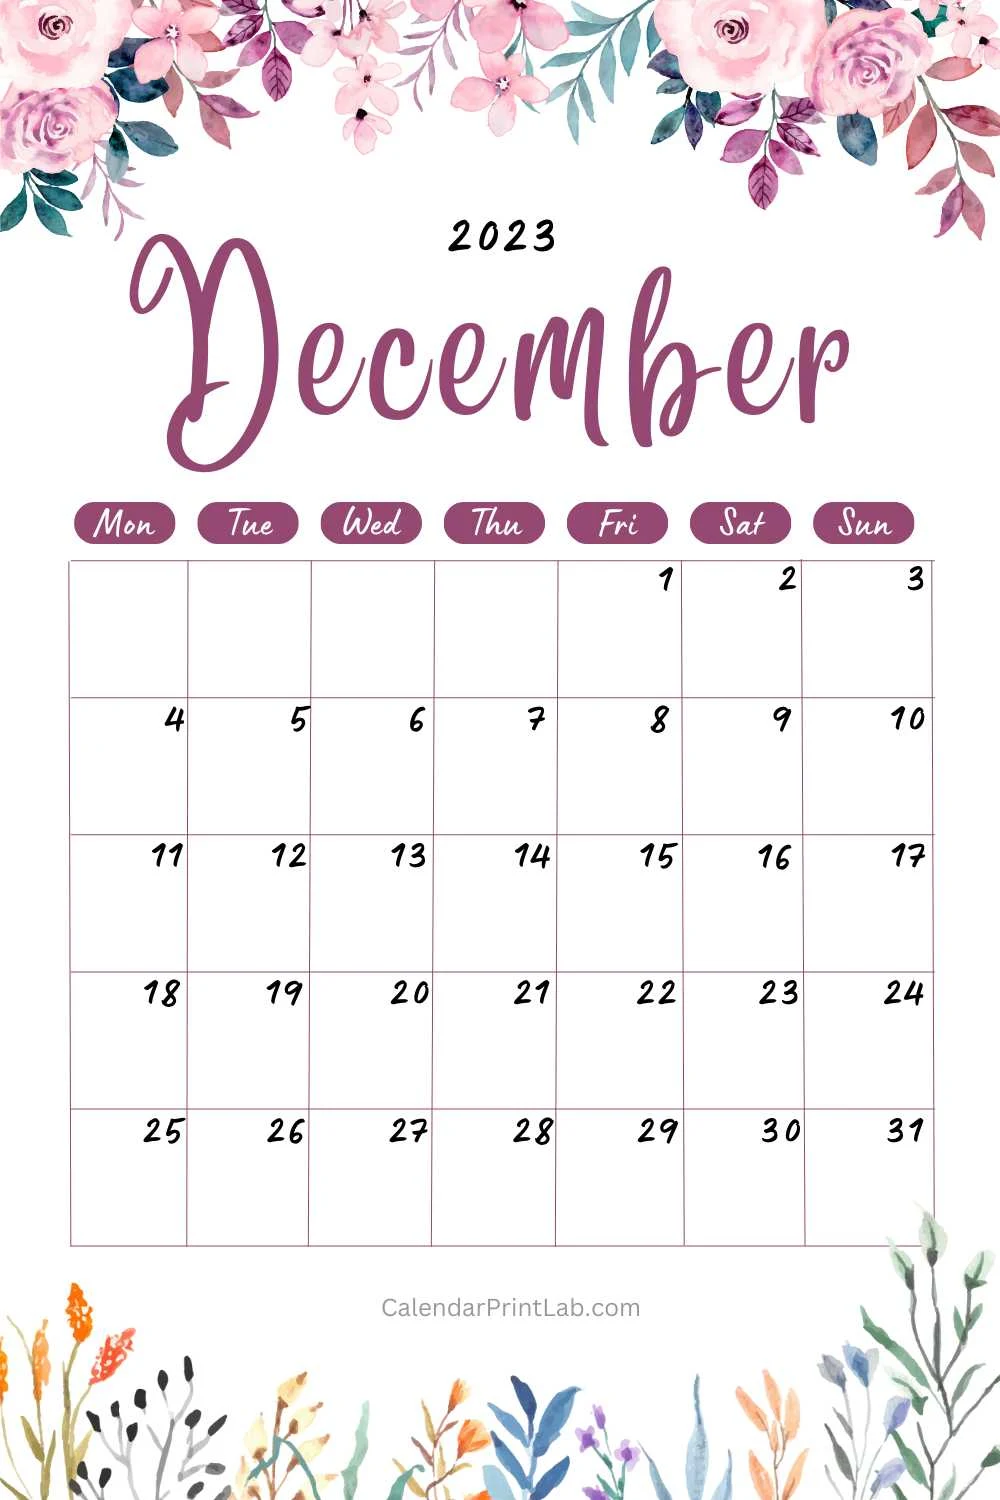 december 2023 floral calendar free download